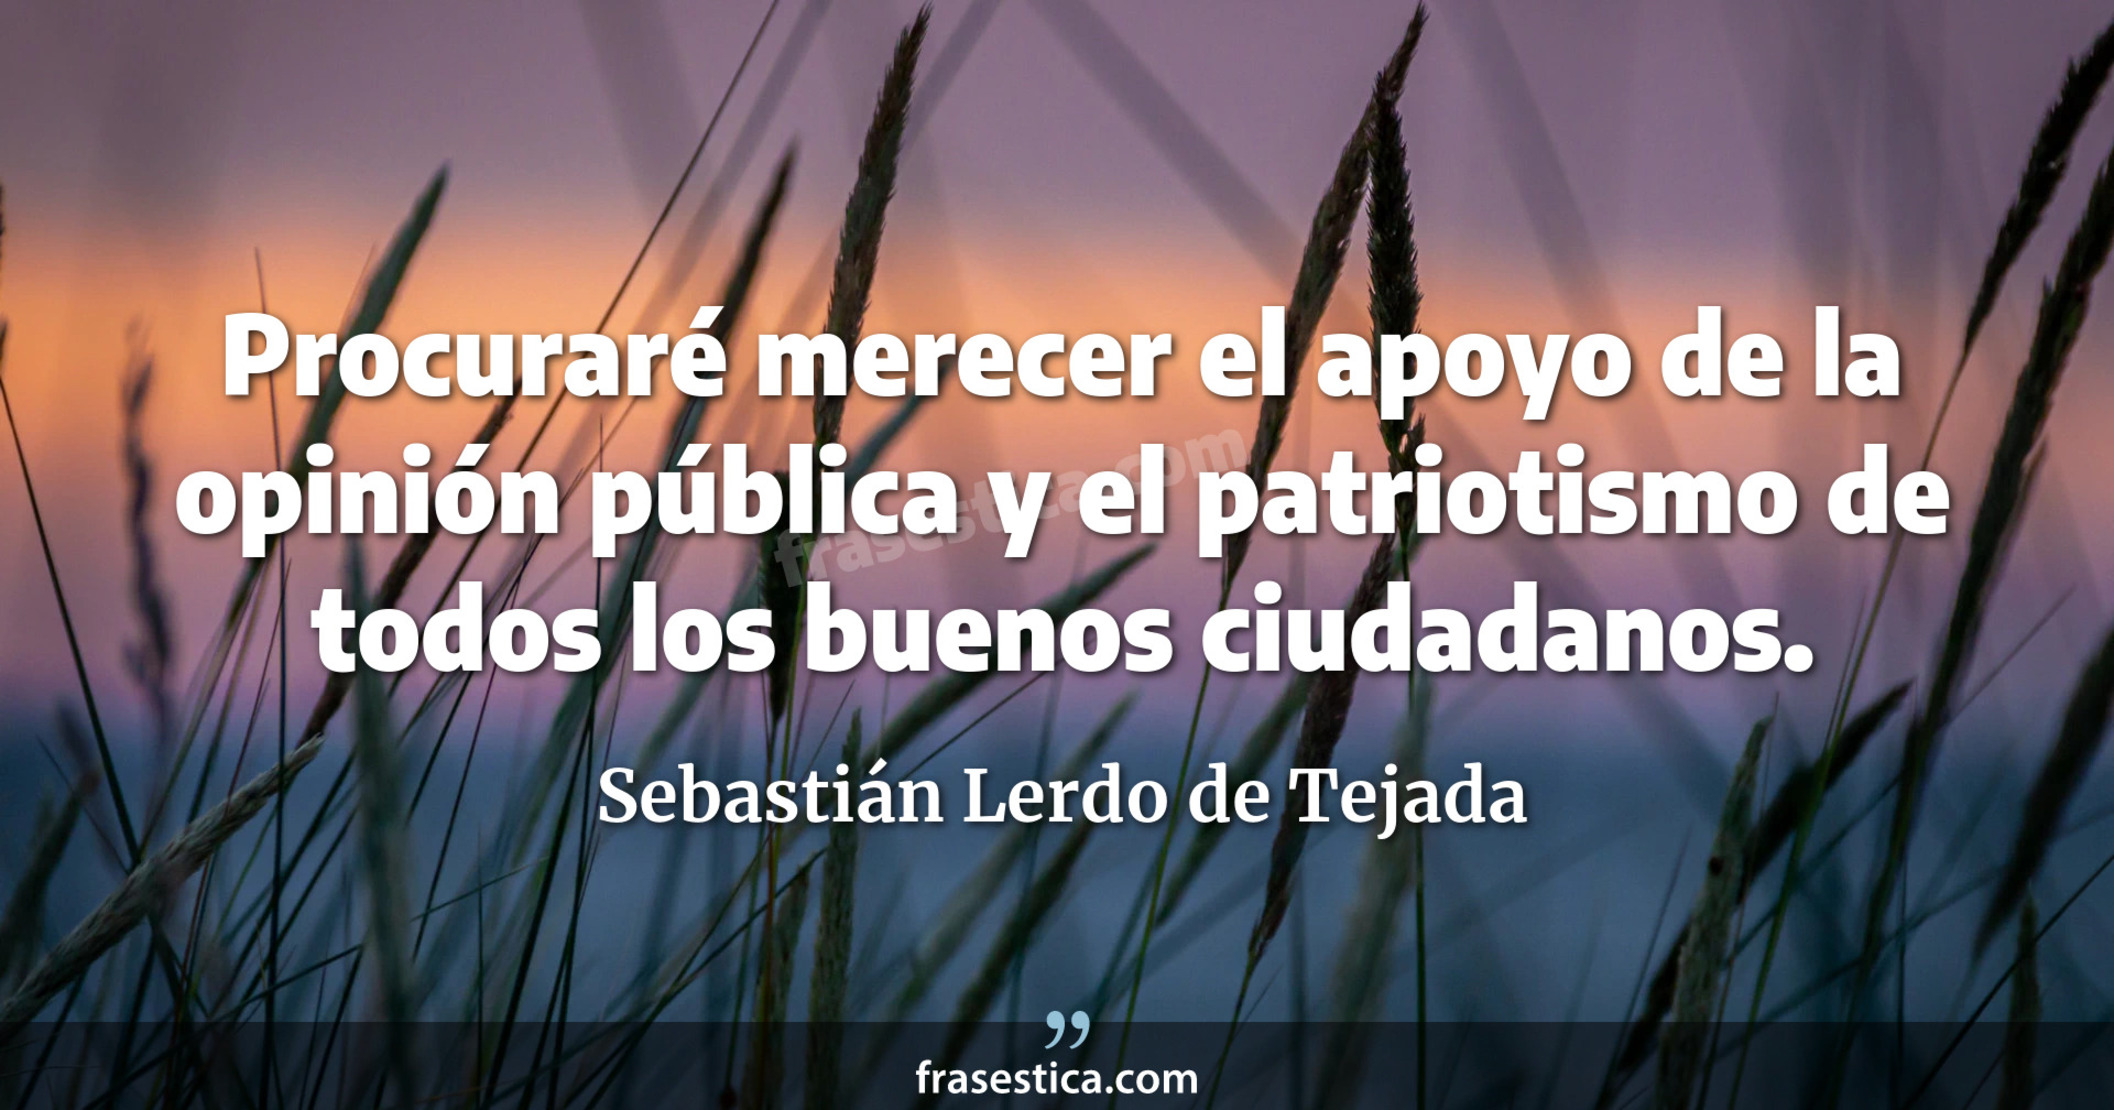 Procuraré merecer el apoyo de la opinión pública y el patriotismo de todos los buenos ciudadanos. - Sebastián Lerdo de Tejada